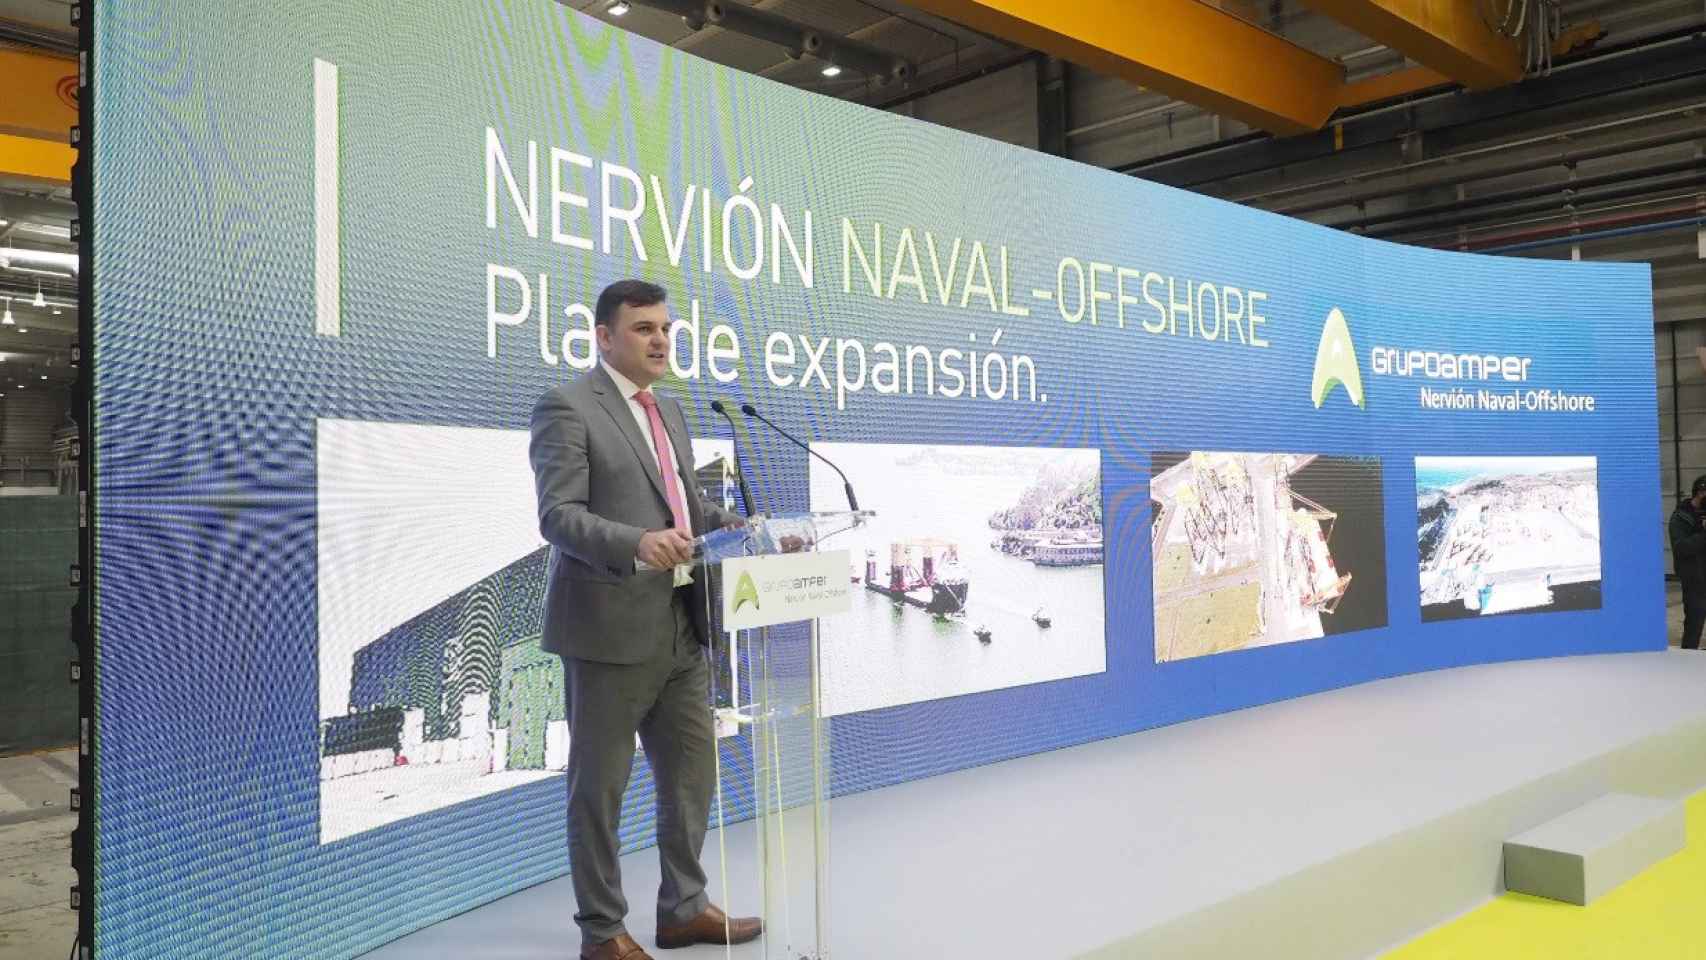 Presentación del Plan de Expansion 2021-2024 de Nervión Naval Offshore - Grupo Amper